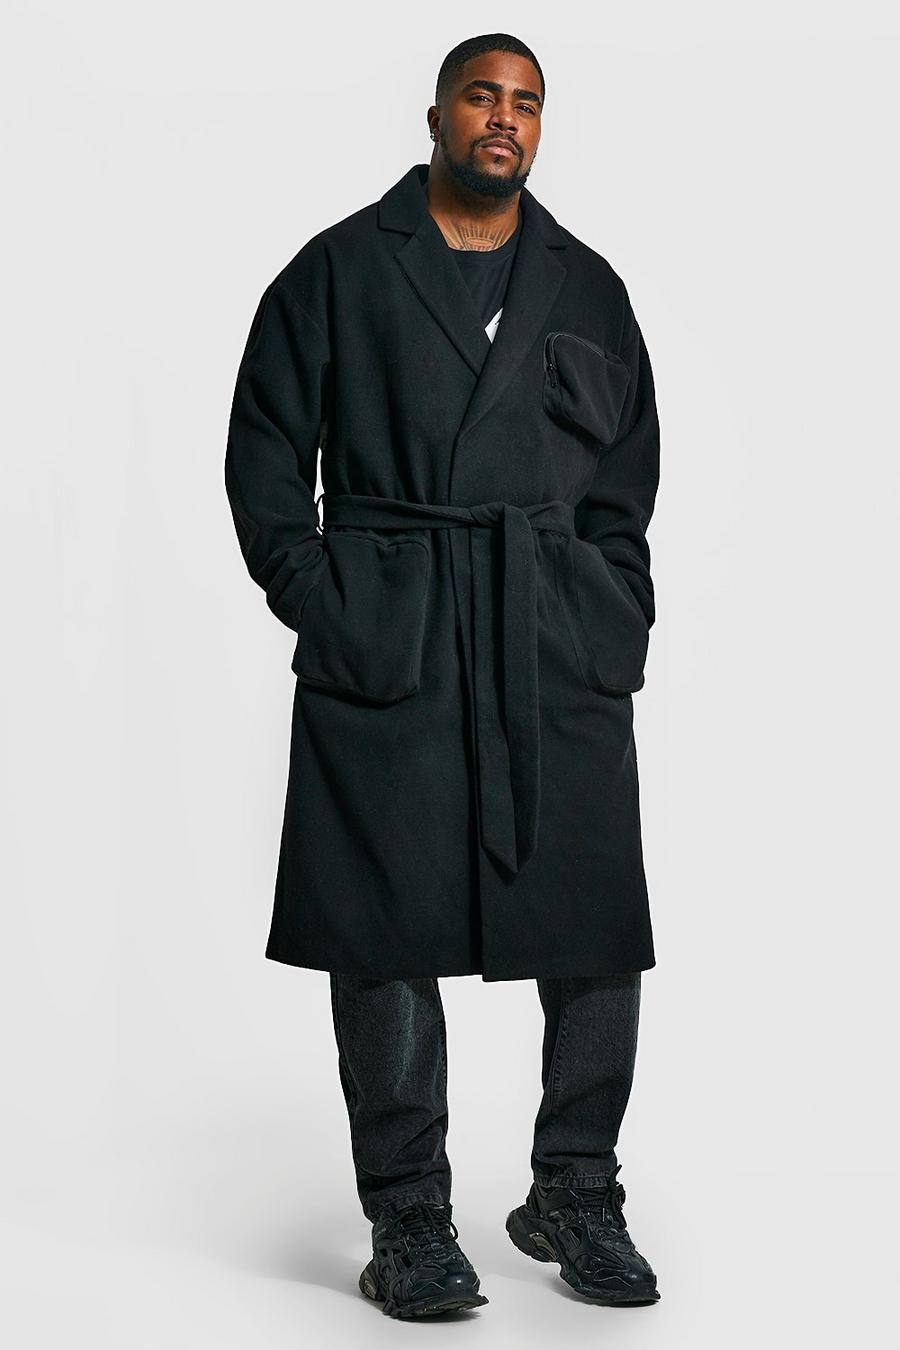 Black nero מעיל עליון בסגנון שימושי עם כיסי תלת-ממד וחגורה, מידות גדולות